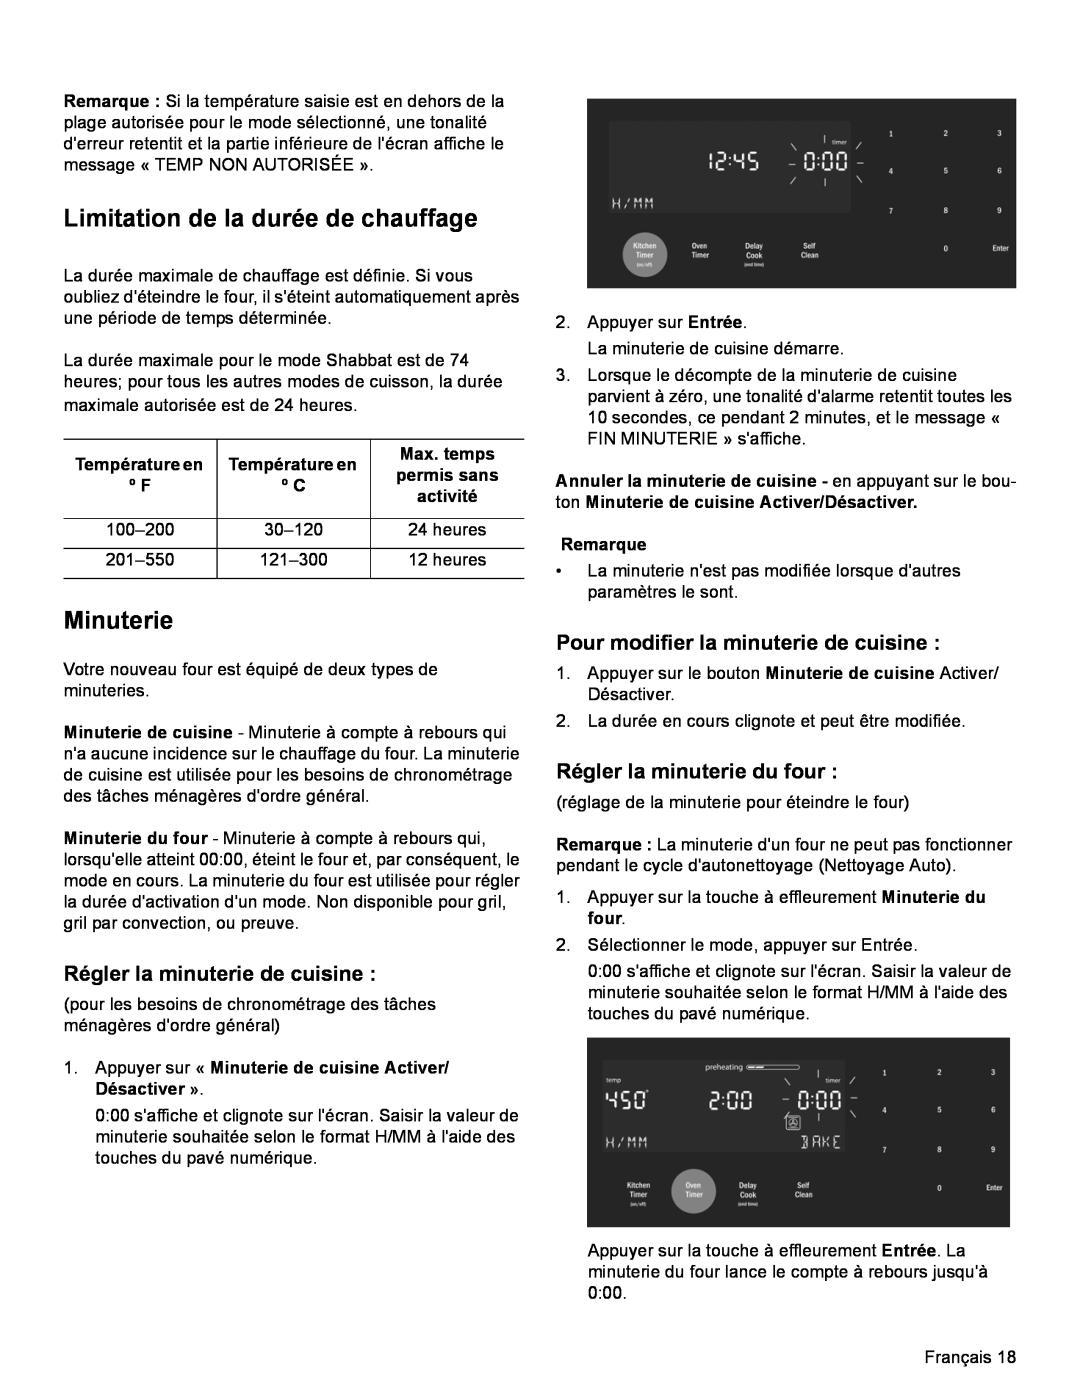 Bosch Appliances HDI8054U Limitation de la durée de chauffage, Minuterie, Régler la minuterie de cuisine, Température en 